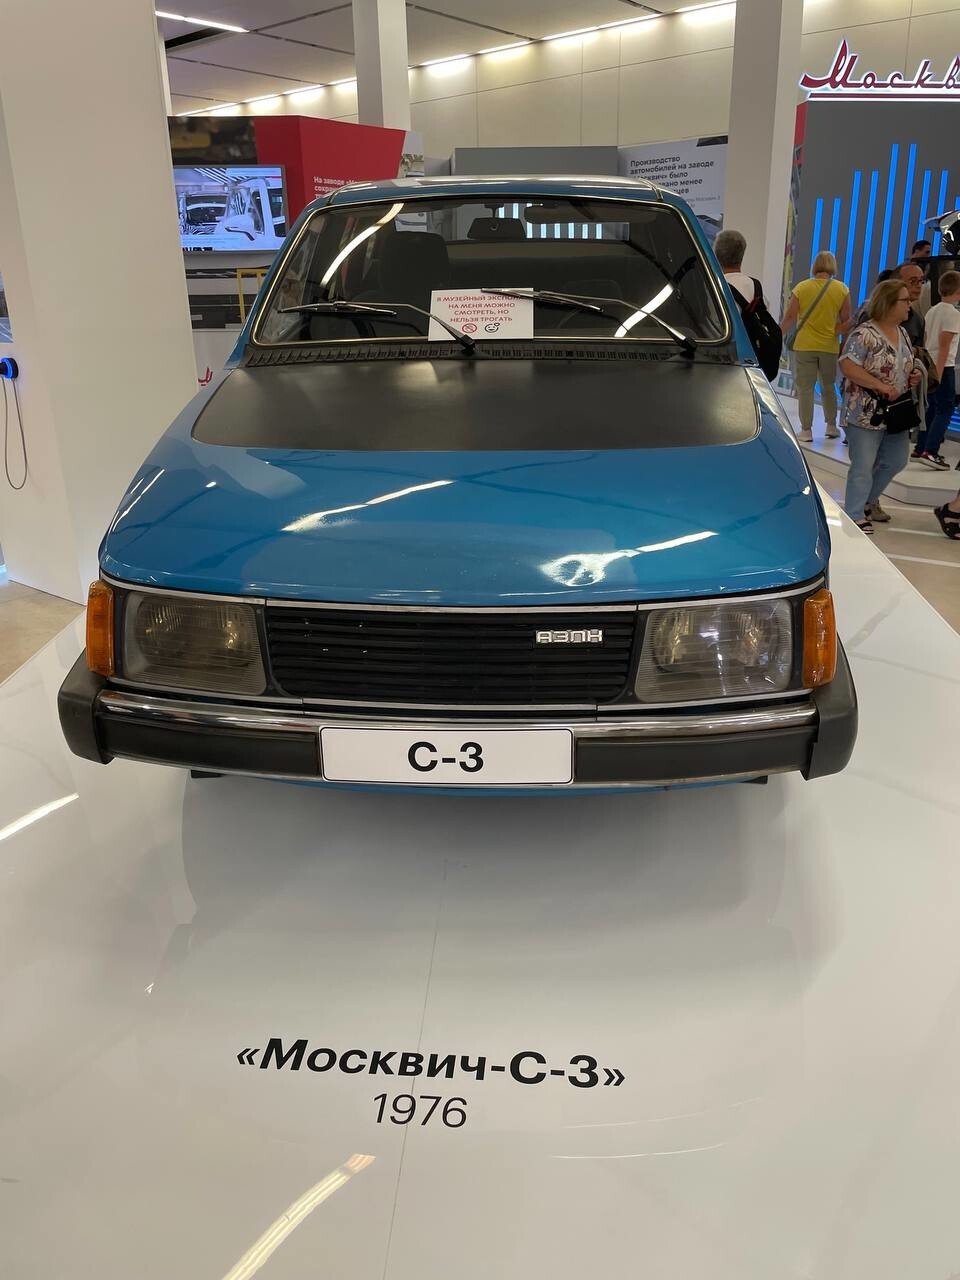 Выставка в Манеже в Москве⁠⁠